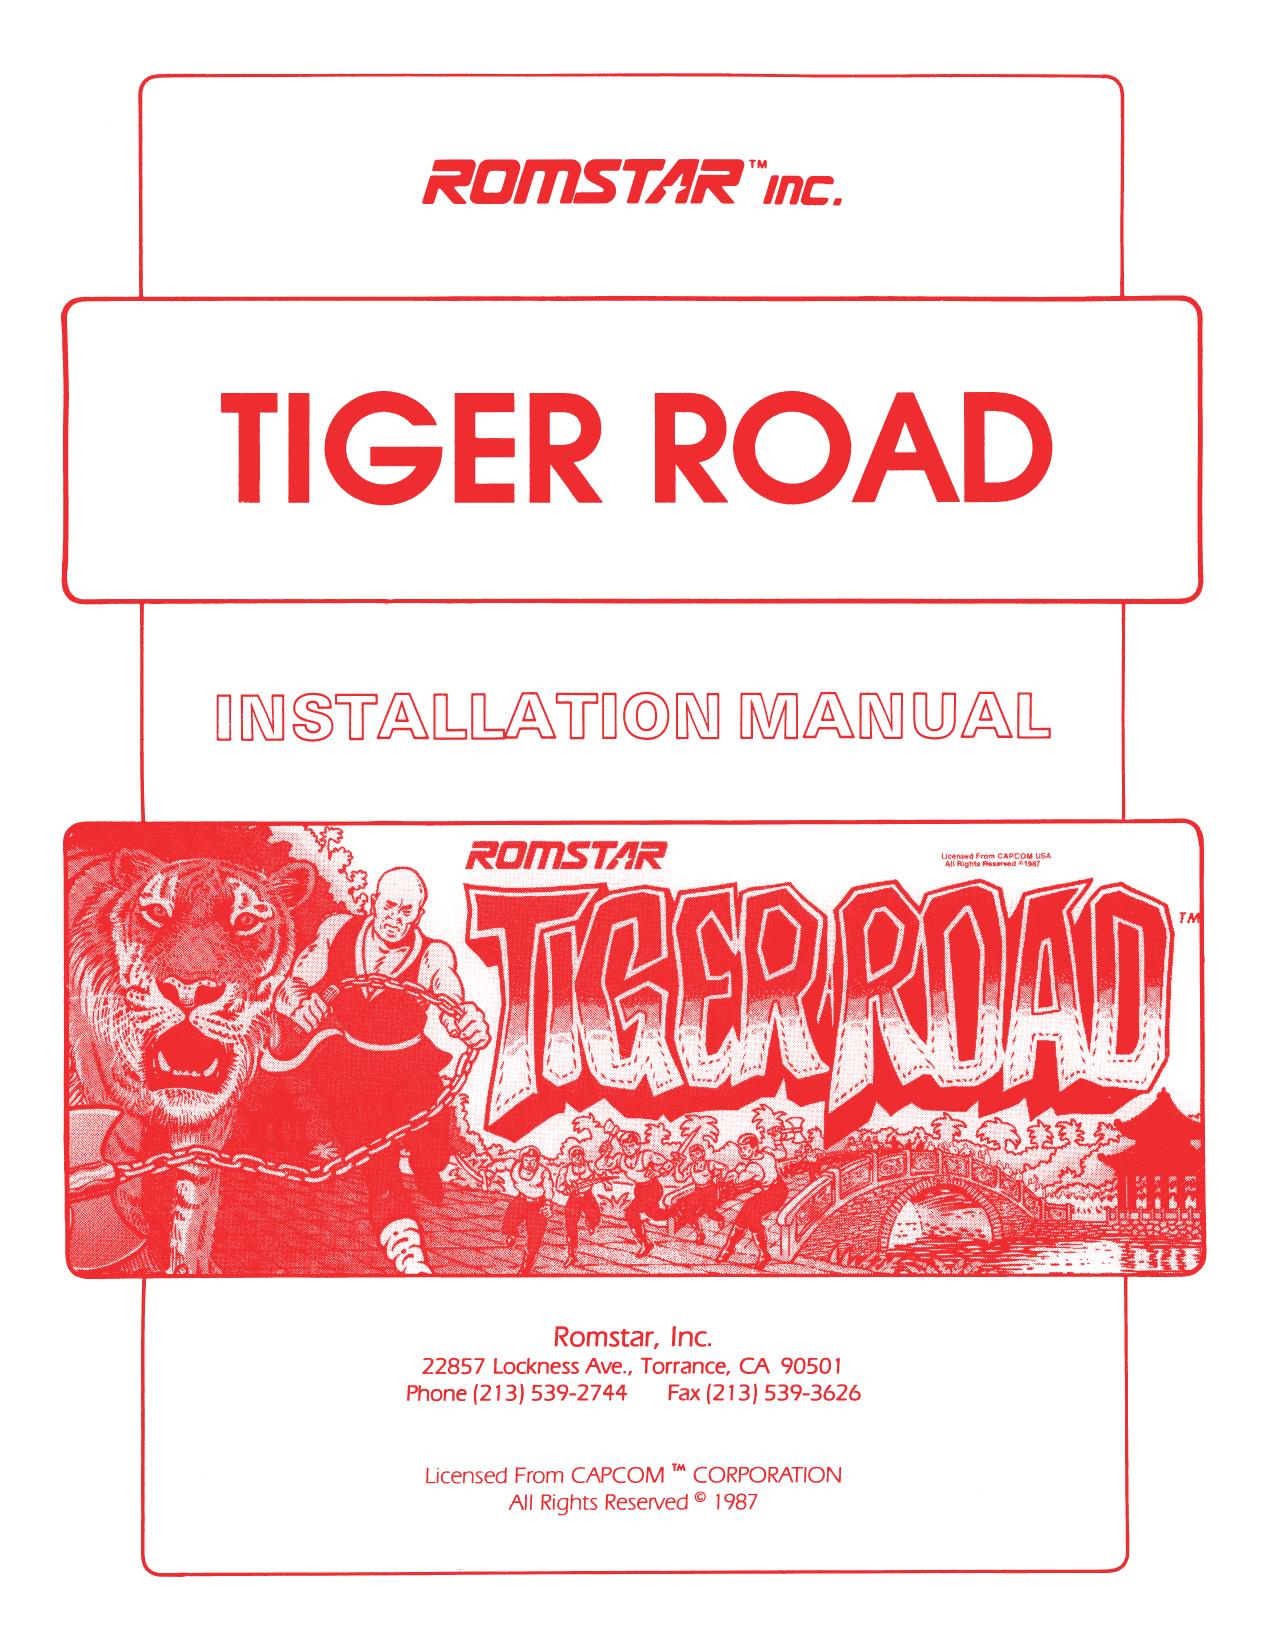 Romstar Tiger Road Manual